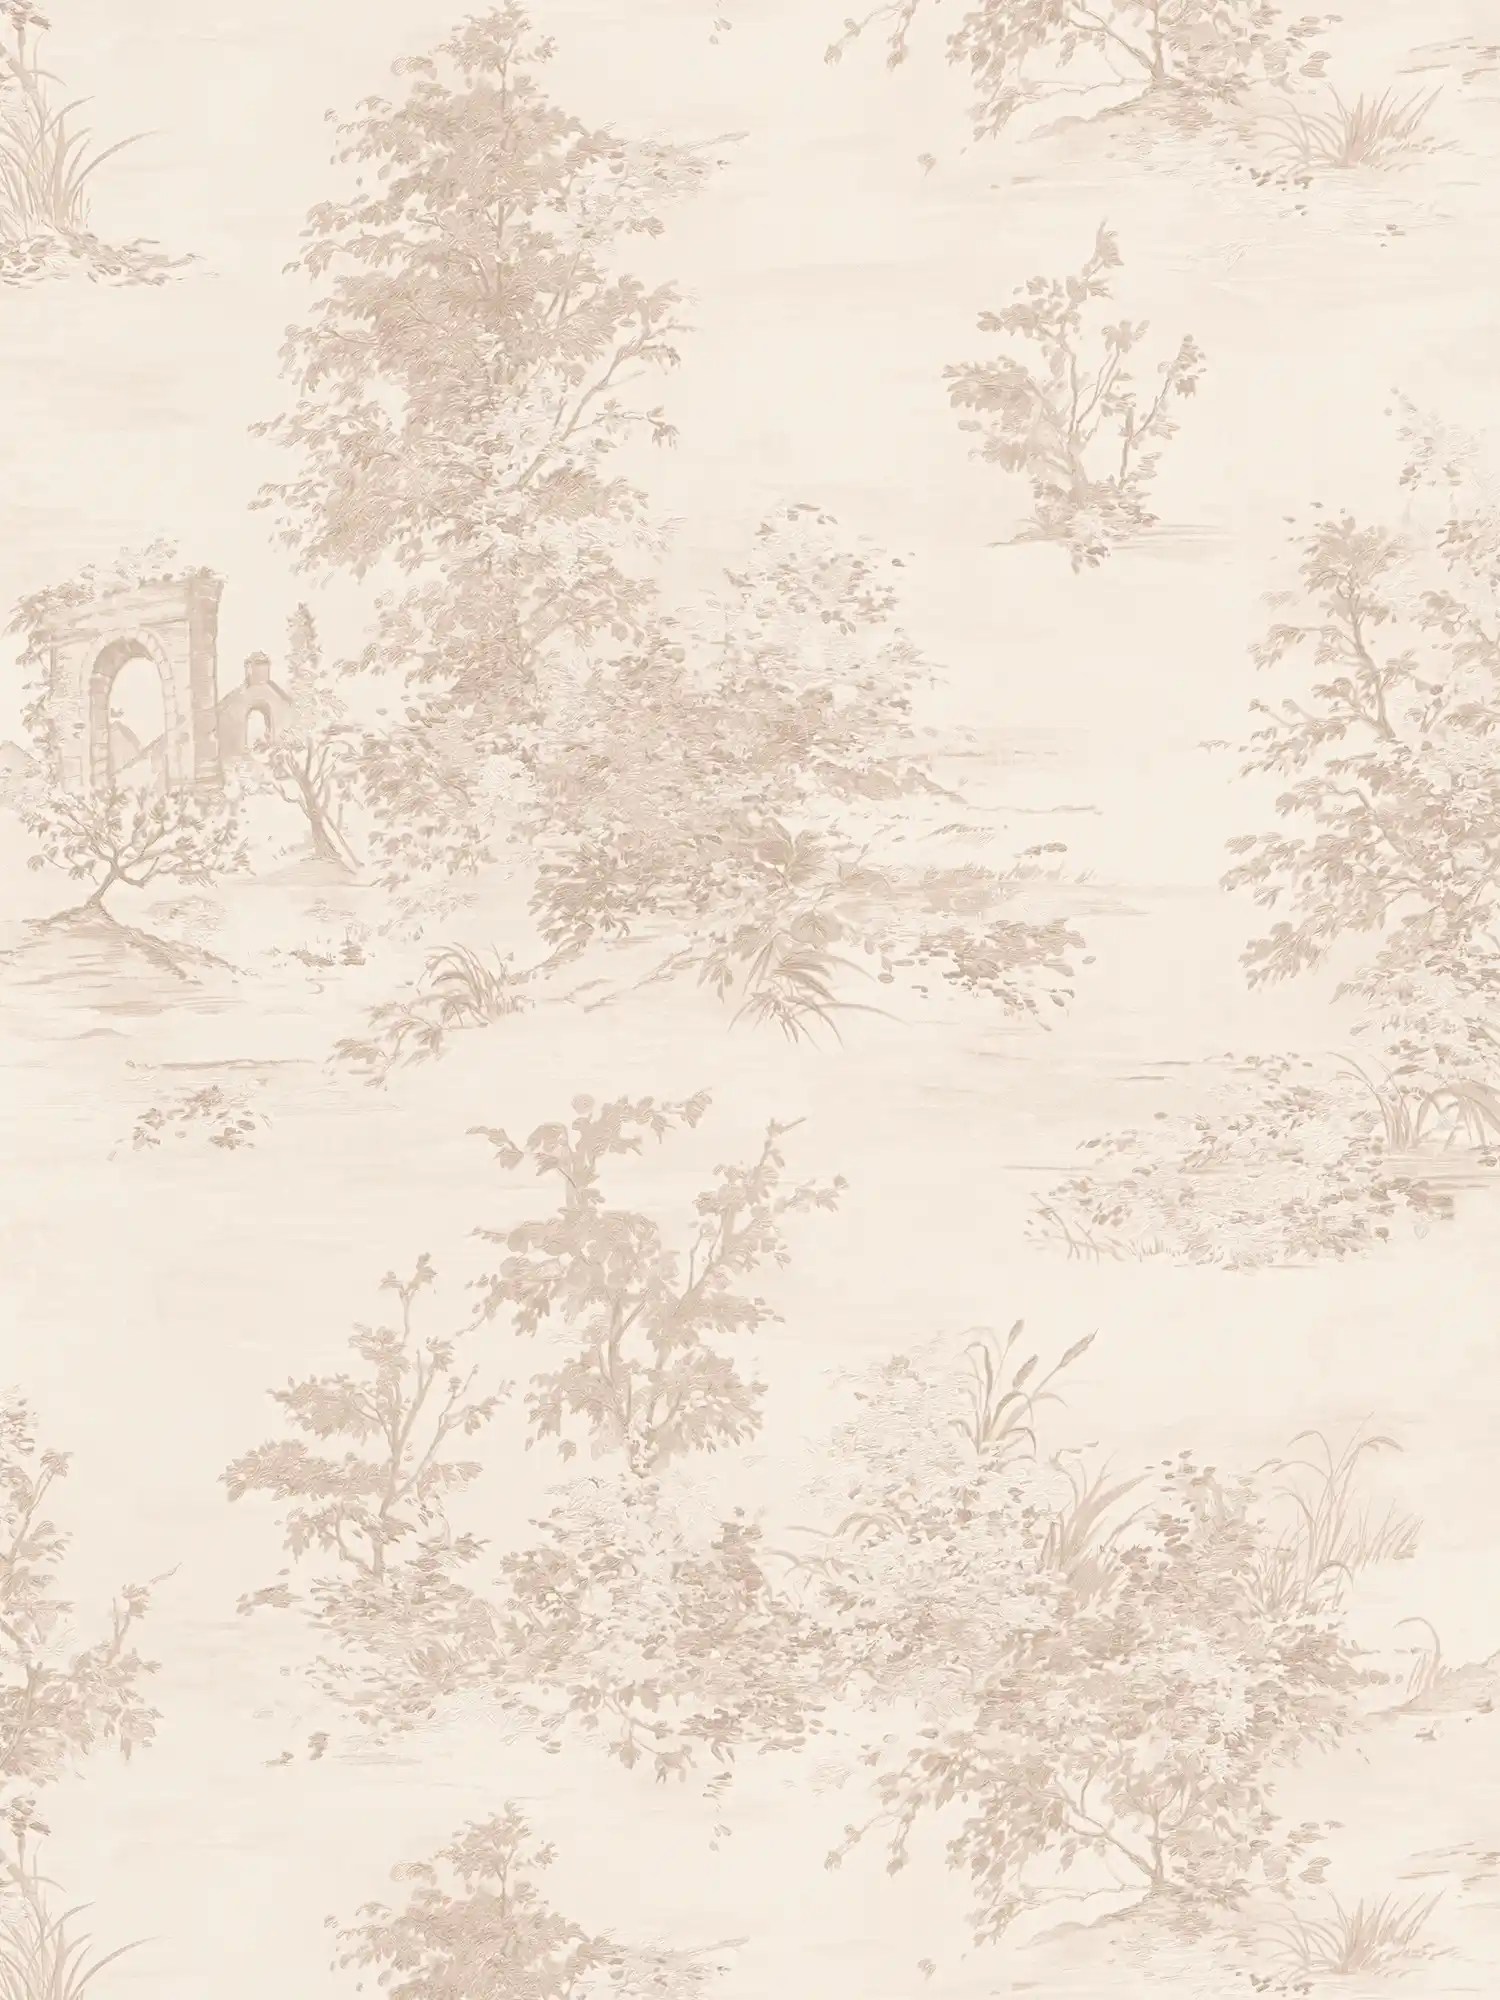         Landhaus Tapete im historischen Stil mit Landschaftsmotiv – Beige, Creme, Rosa
    